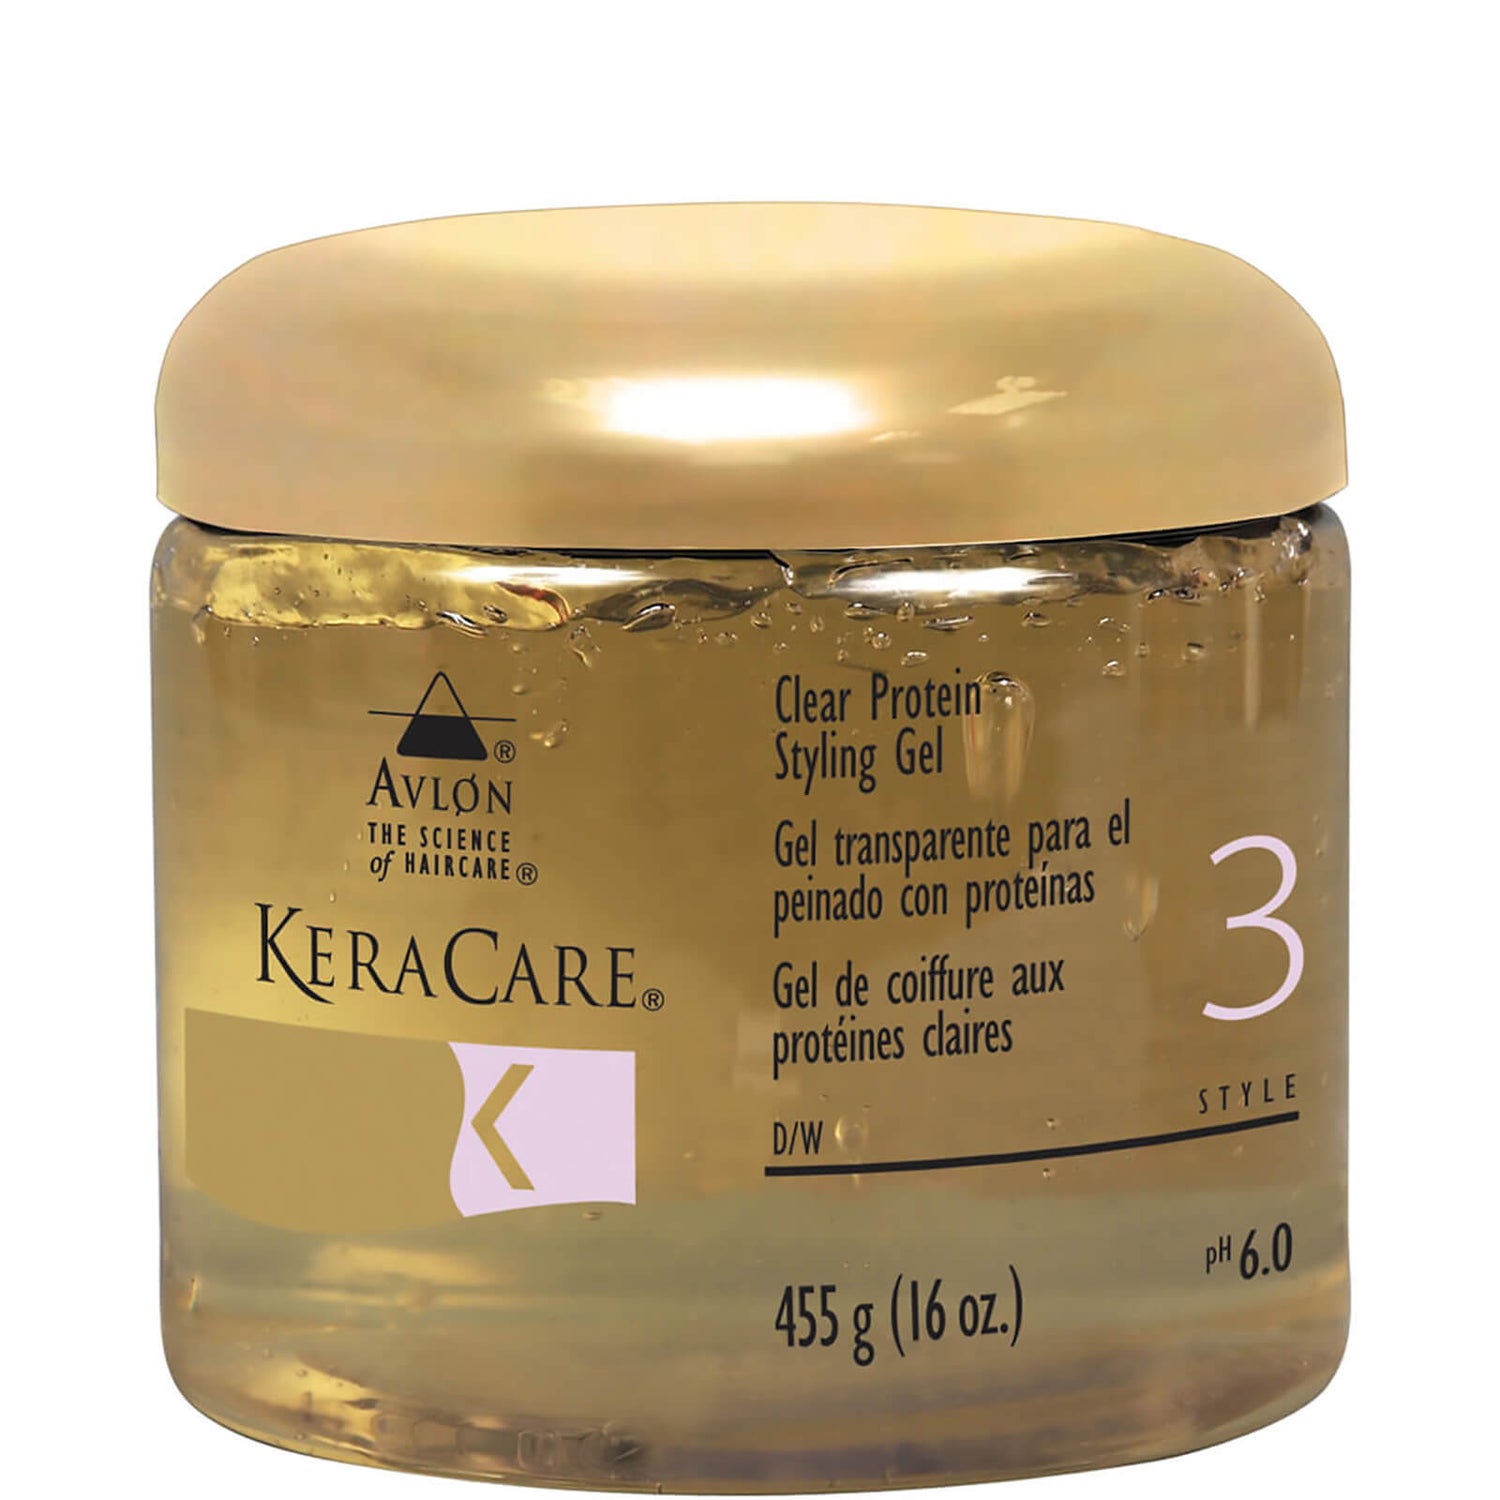 KeraCare Gel de coiffure aux protéines (transparent) (455g)